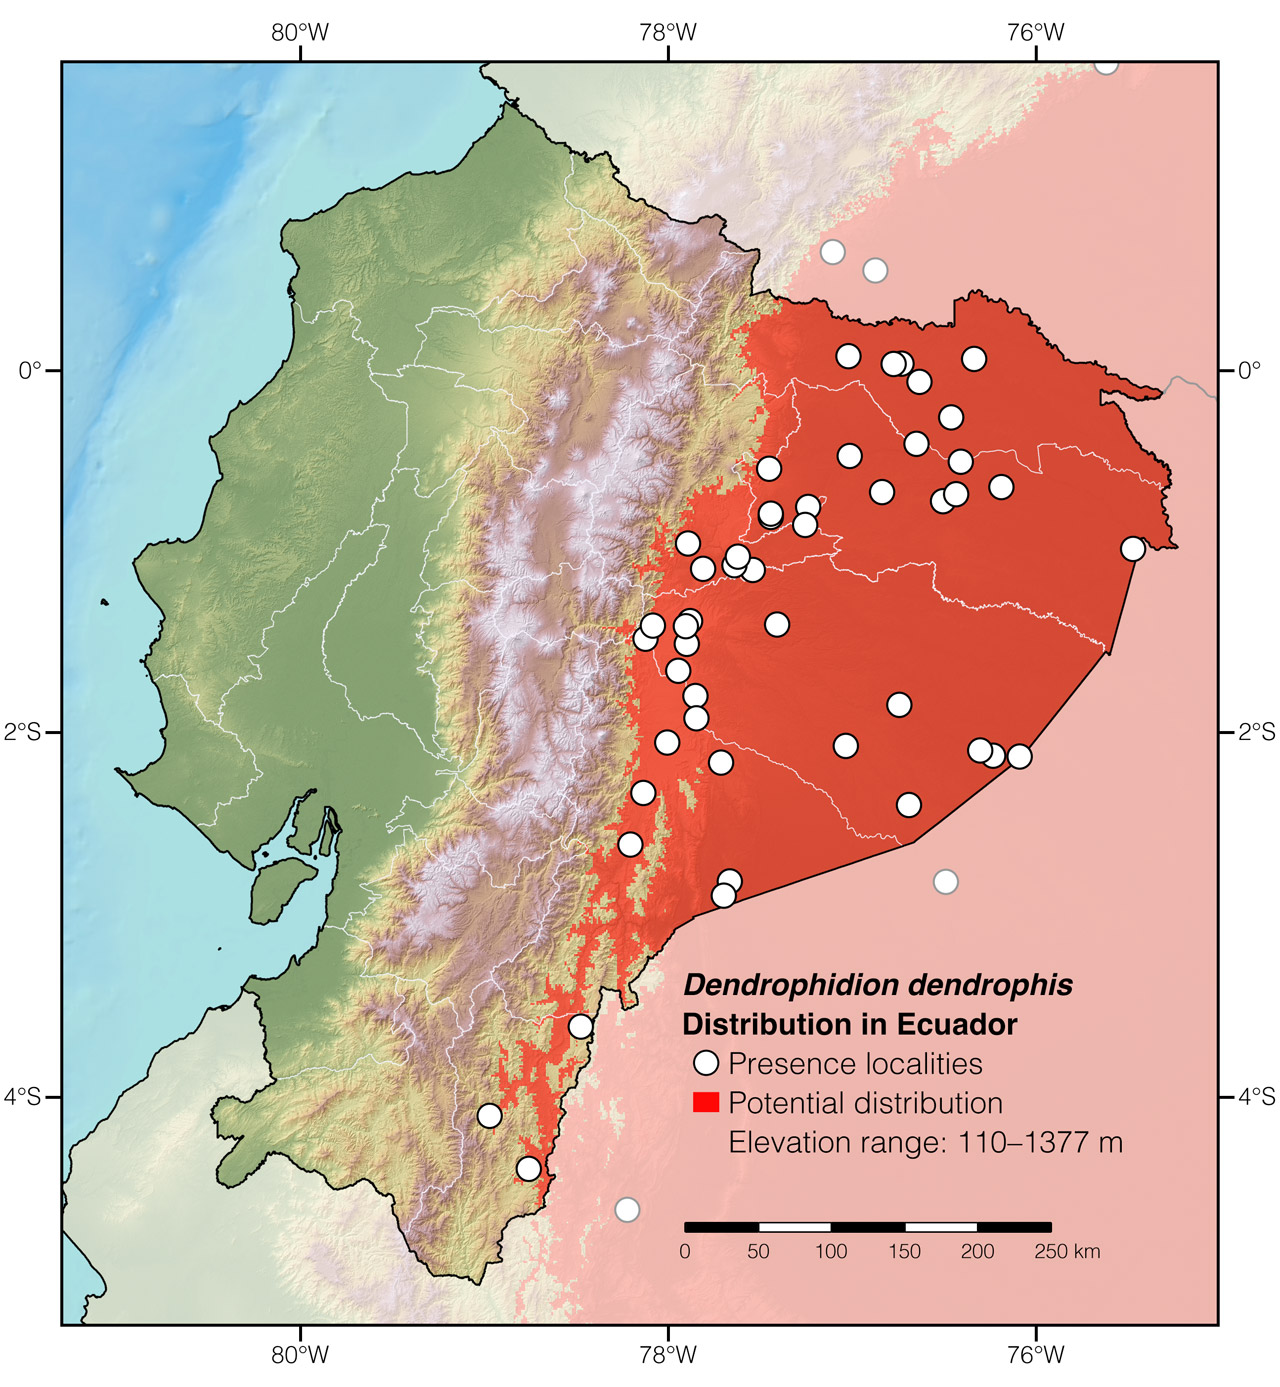 Distribution of Dendrophidion dendrophis in Ecuador